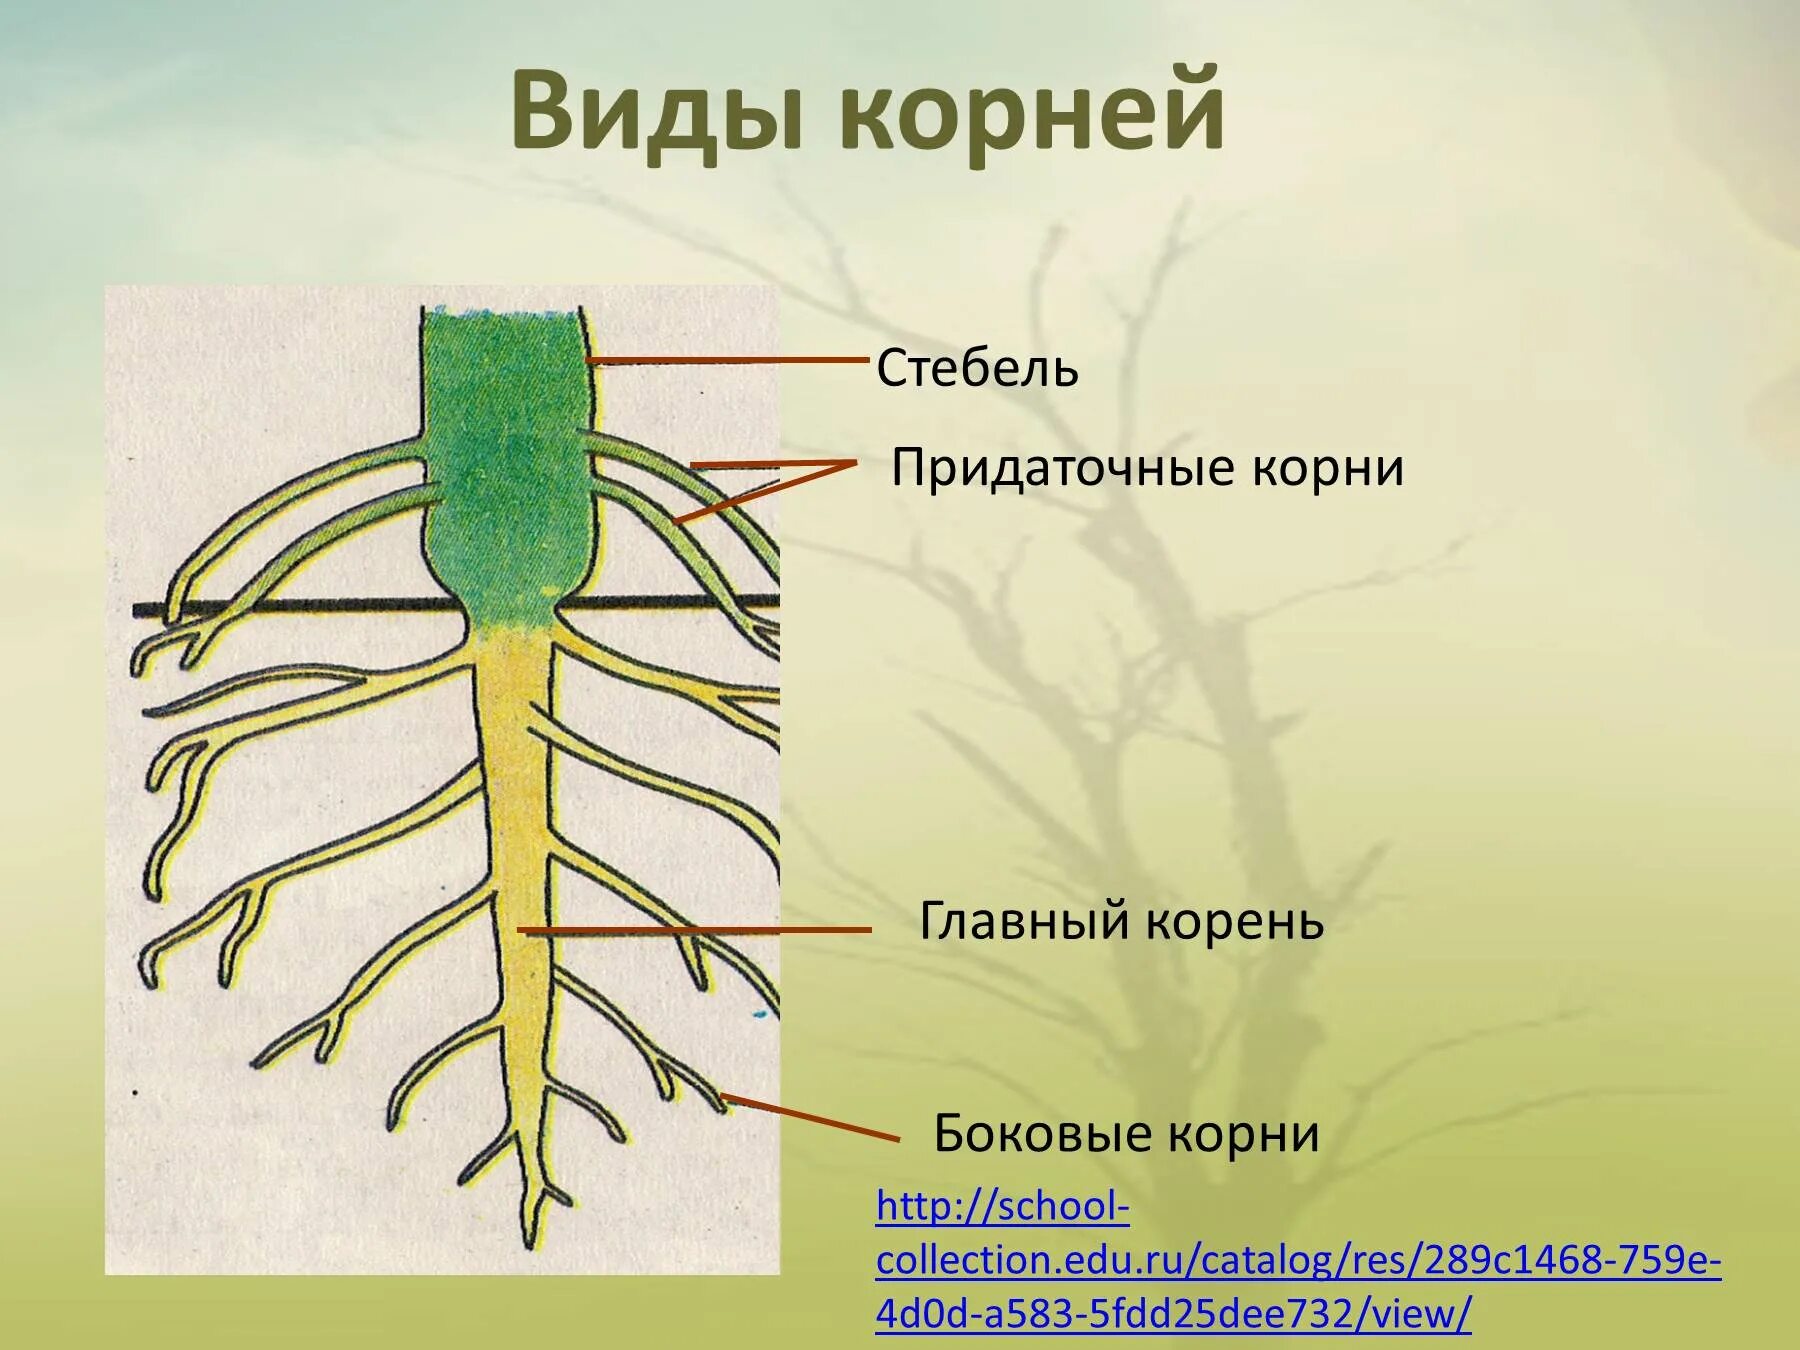 Придаточные корни есть. Боковые корни. Строение главного корня. Боковые корни у растений.